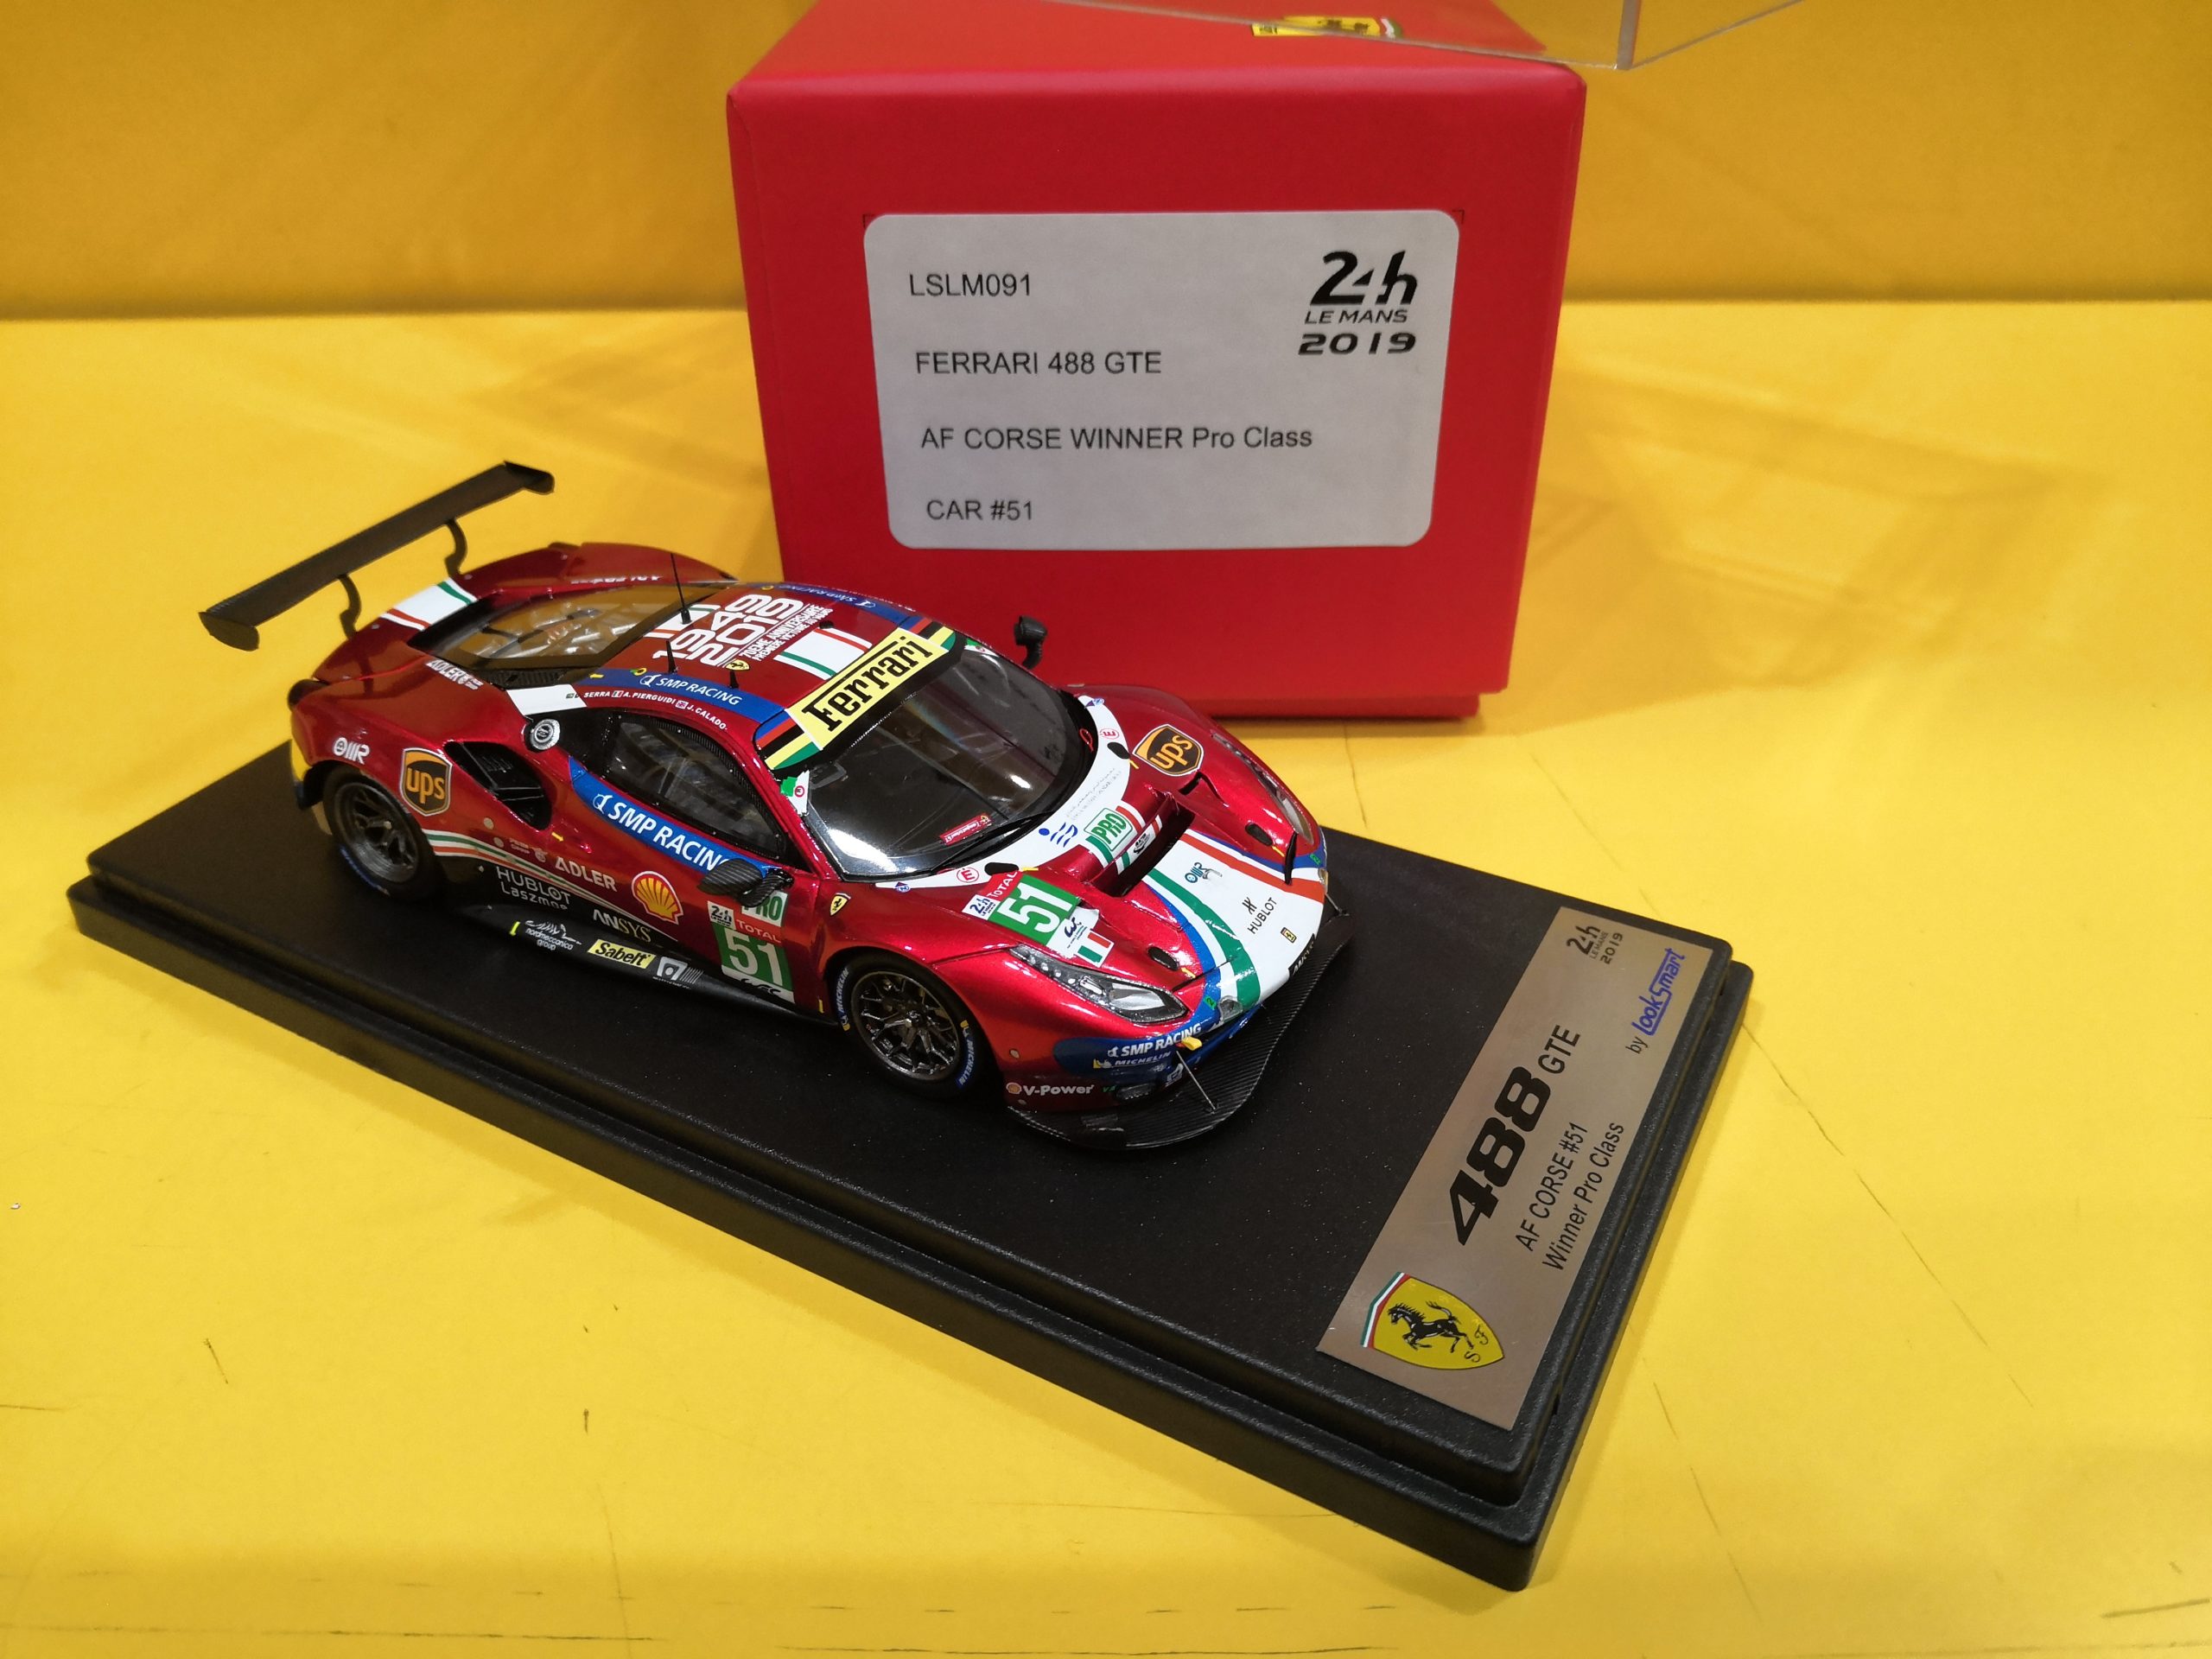 Look Smart Lslm091 – Ferrari 488 Gte 24H Le Mans 2019 – Maranello Collection